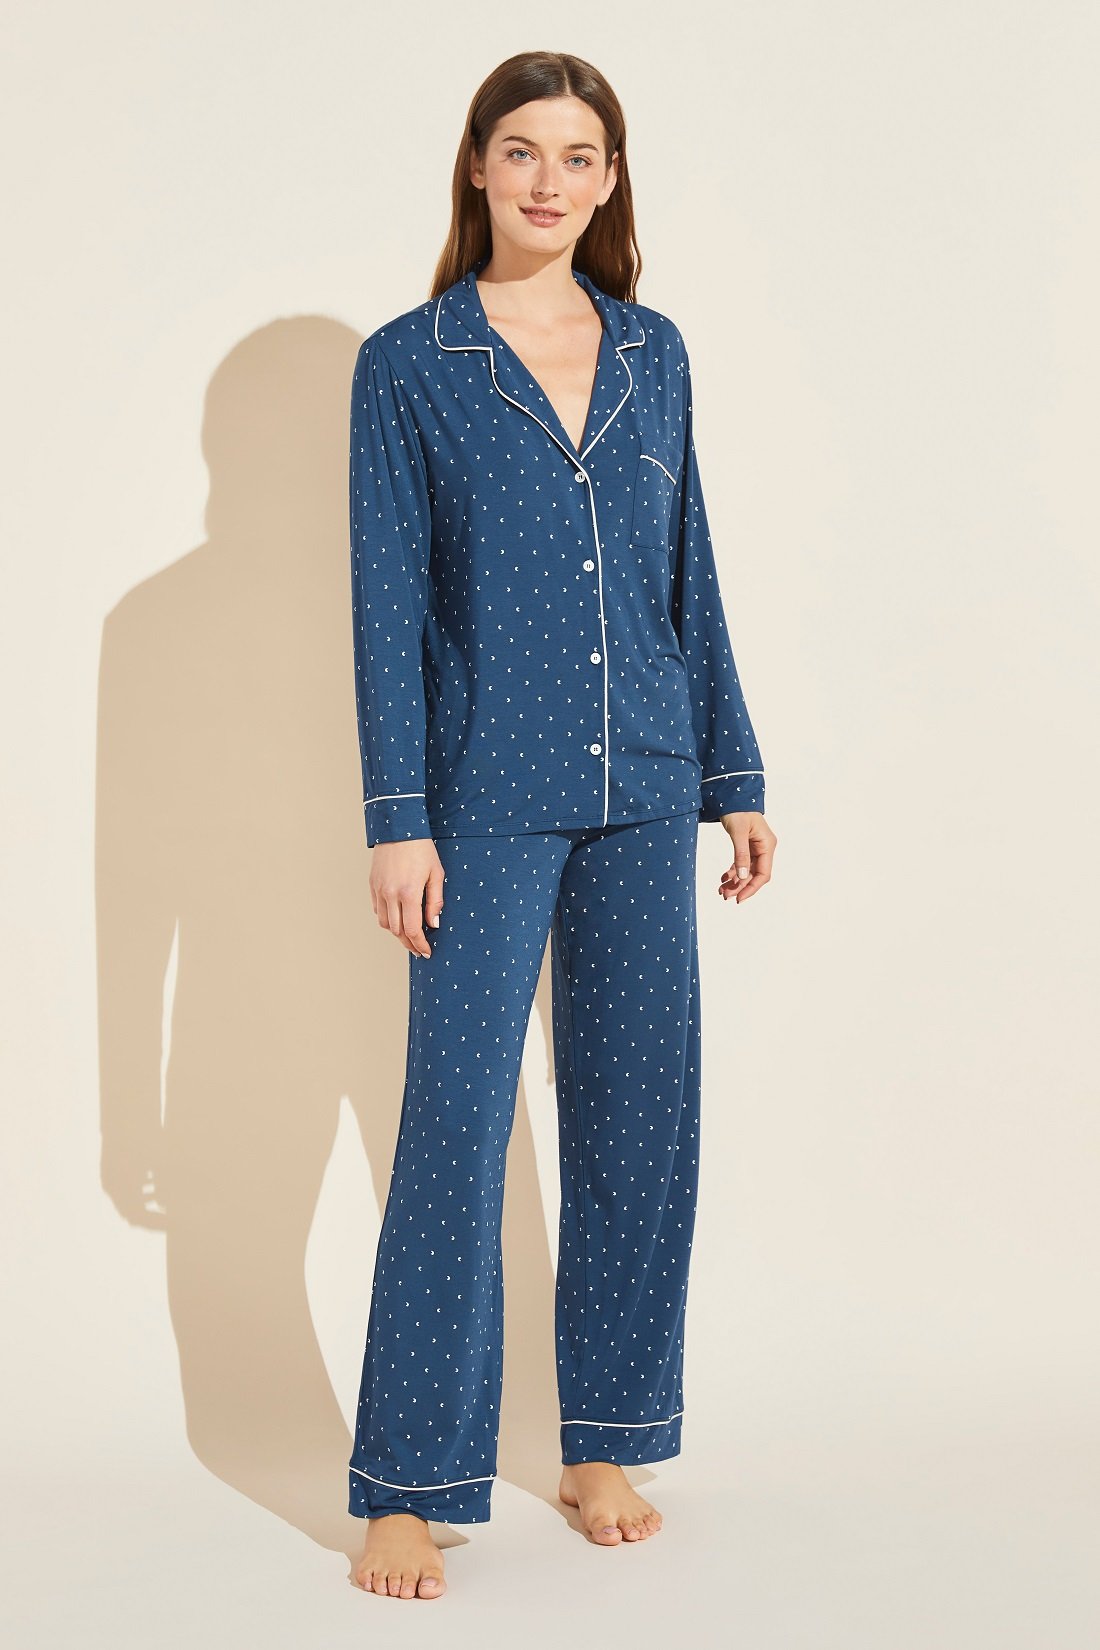 Pajama Review